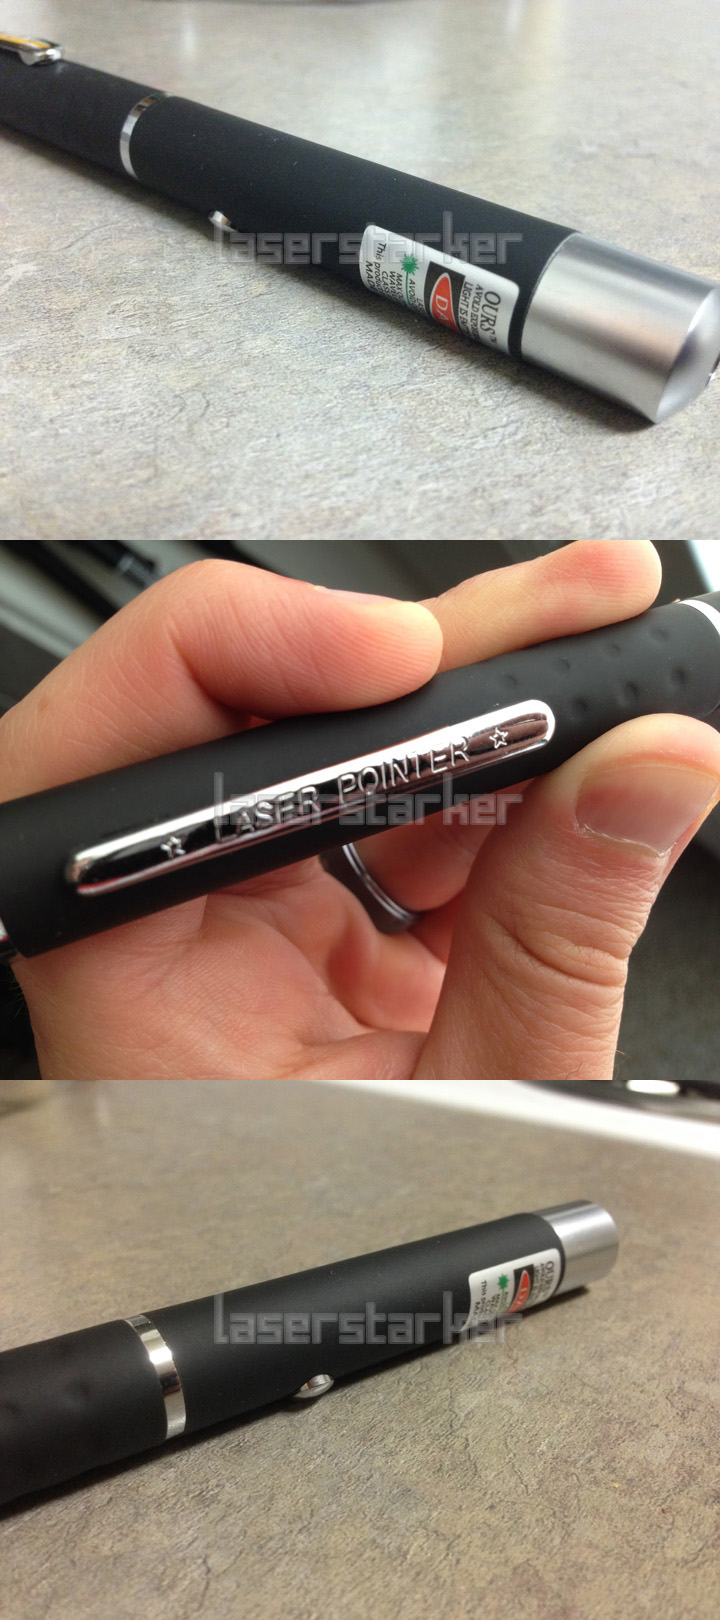 Grüner Laserpointer Stift ultra 500mW Leistung